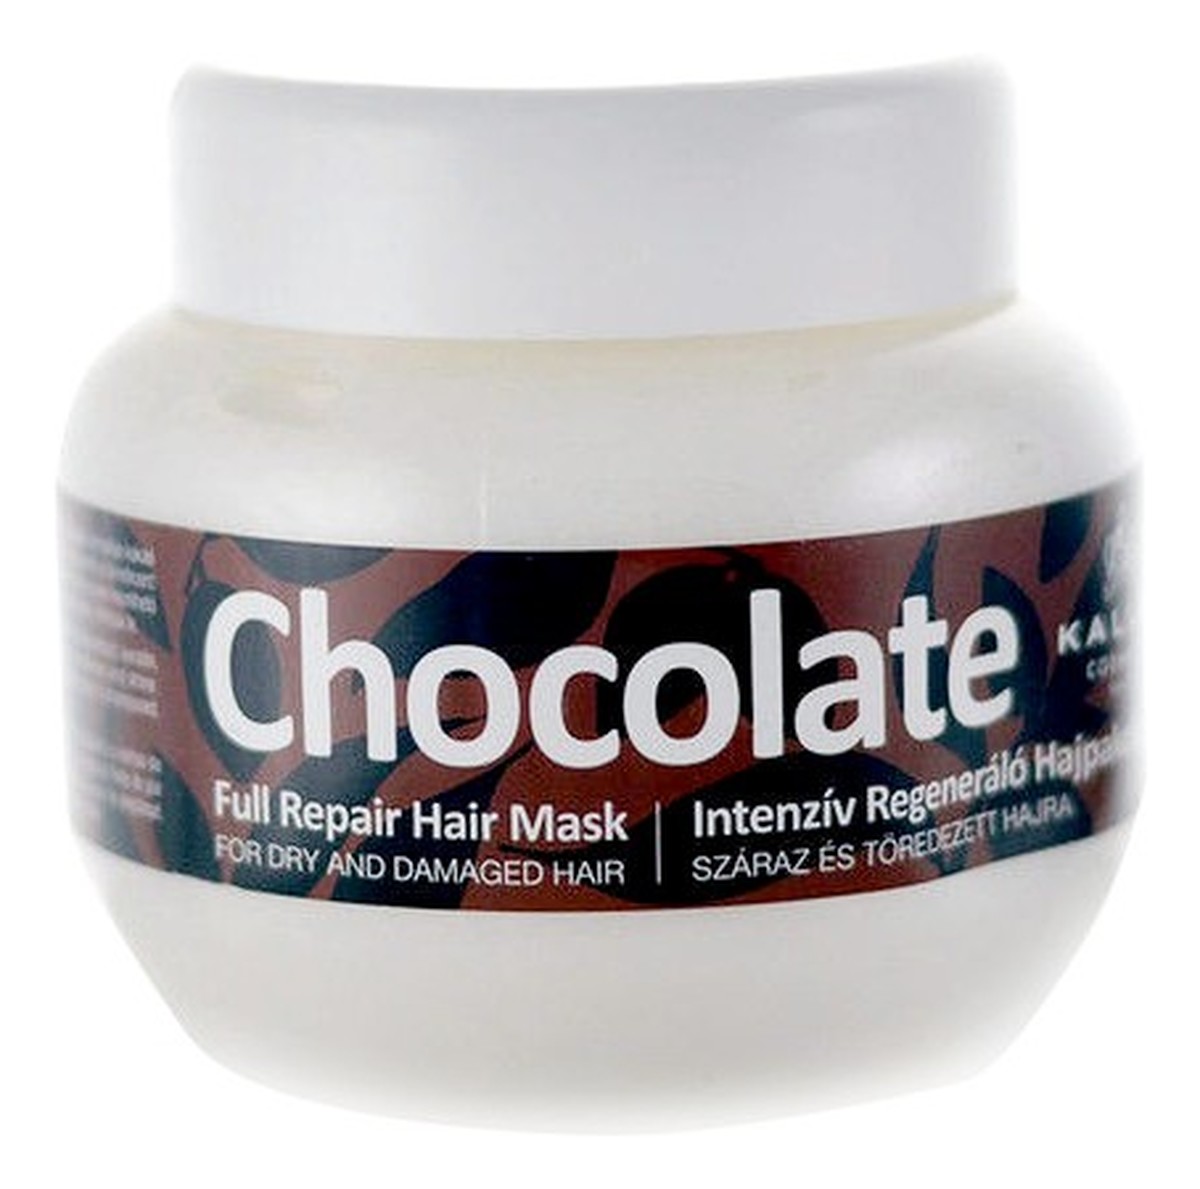 Full Repair Hair Mask intensywna regenerująca maska czekoladowa do włosów suchych i łamiących się